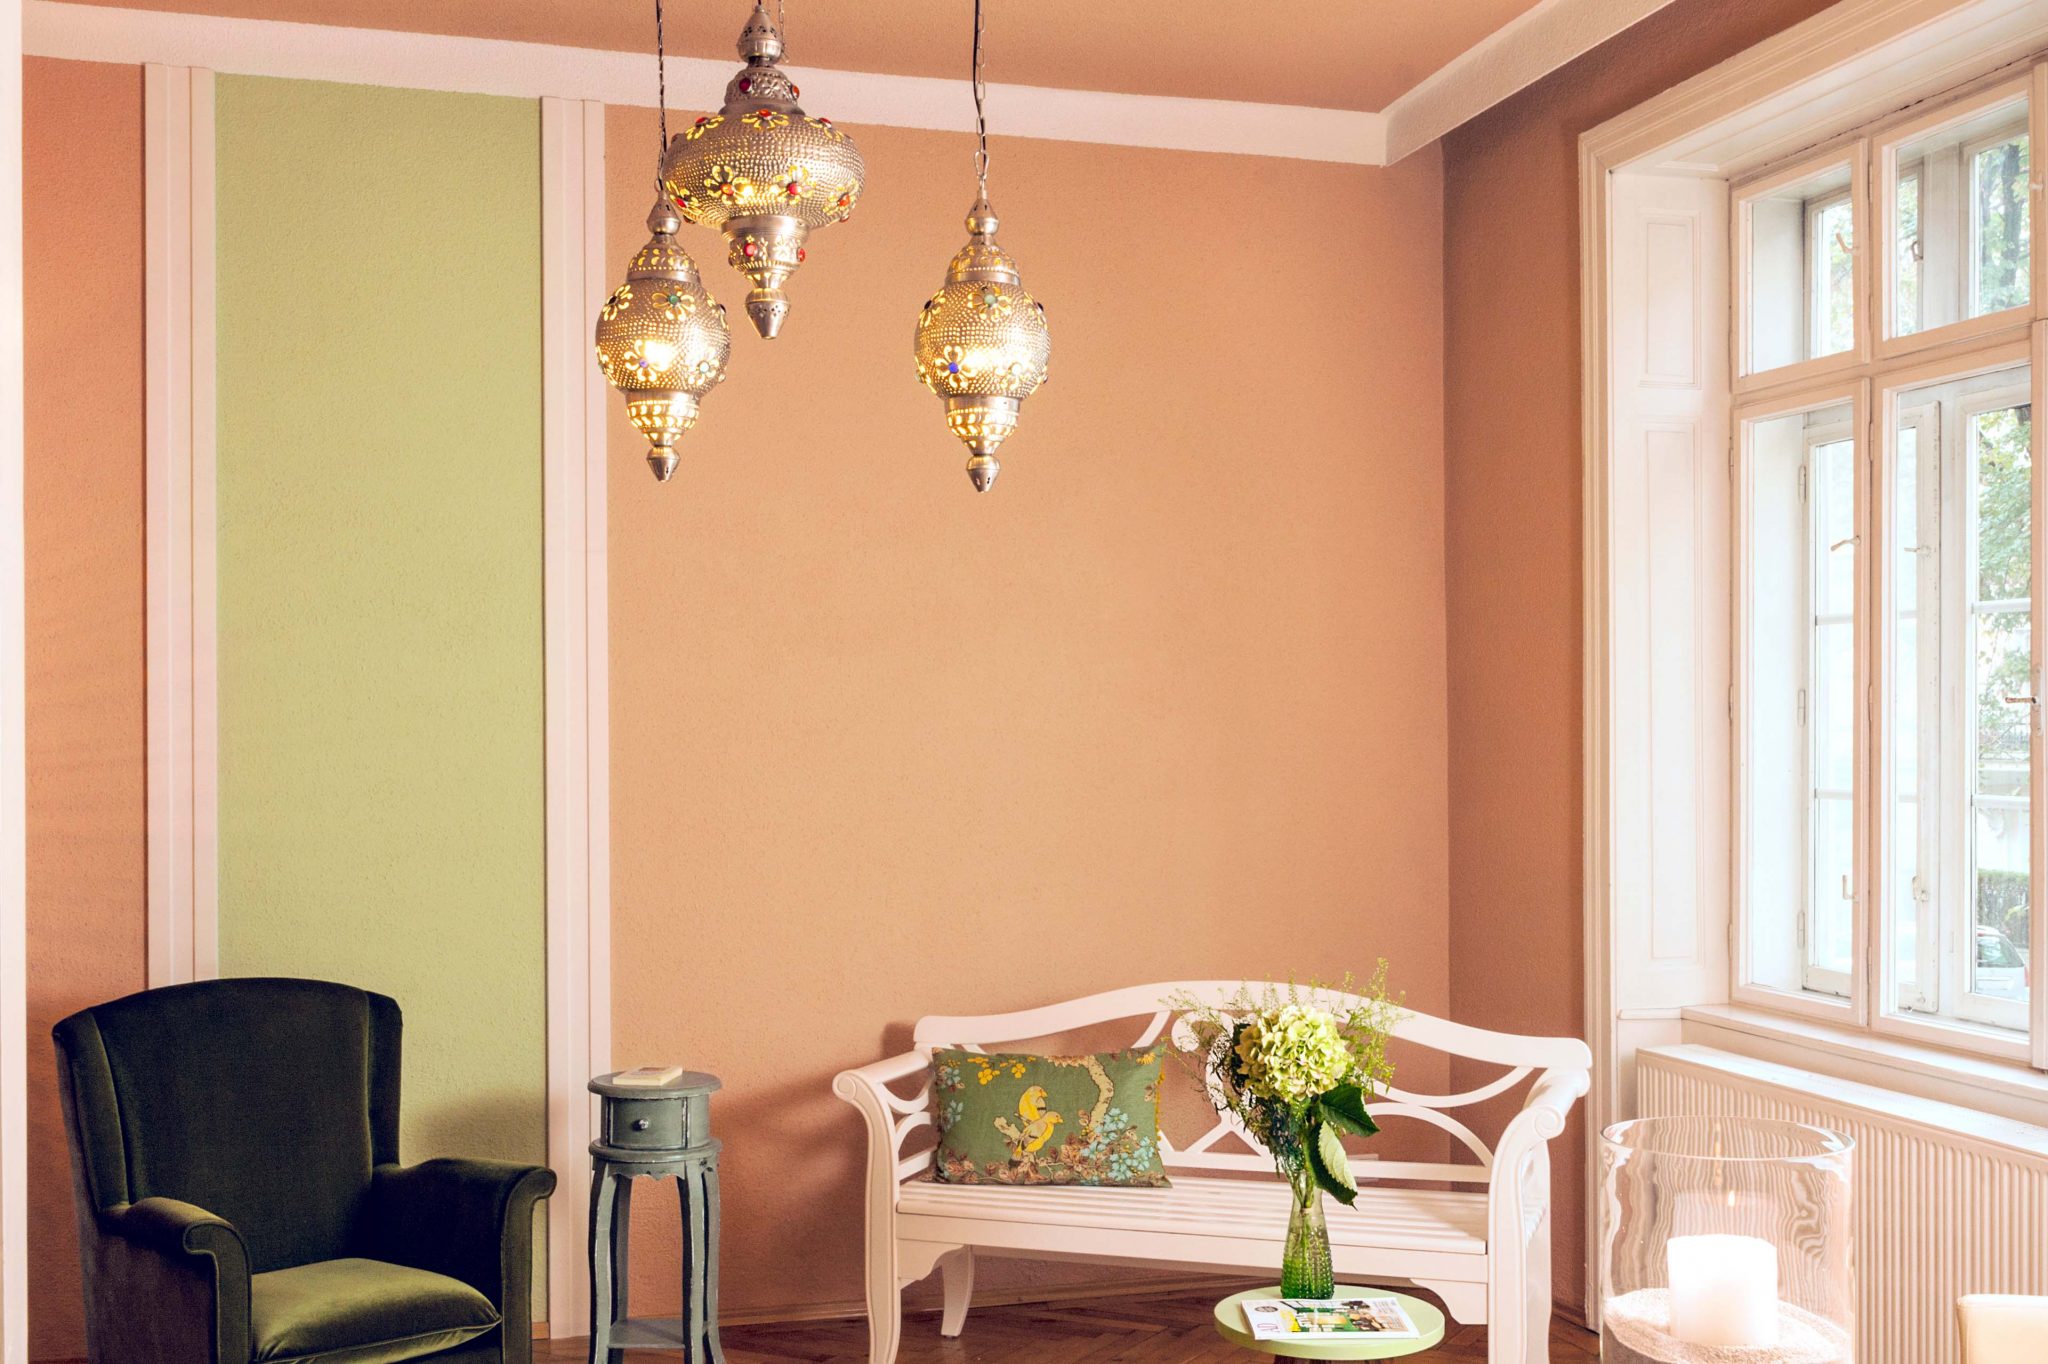 Zimmer eingerichtet mit weißer Bank, grünem Sessel, Tisch mit Blumendekoration und Kerze, orientalische Lampe und Wand in den Farben Cappuccino und Lindgrün.